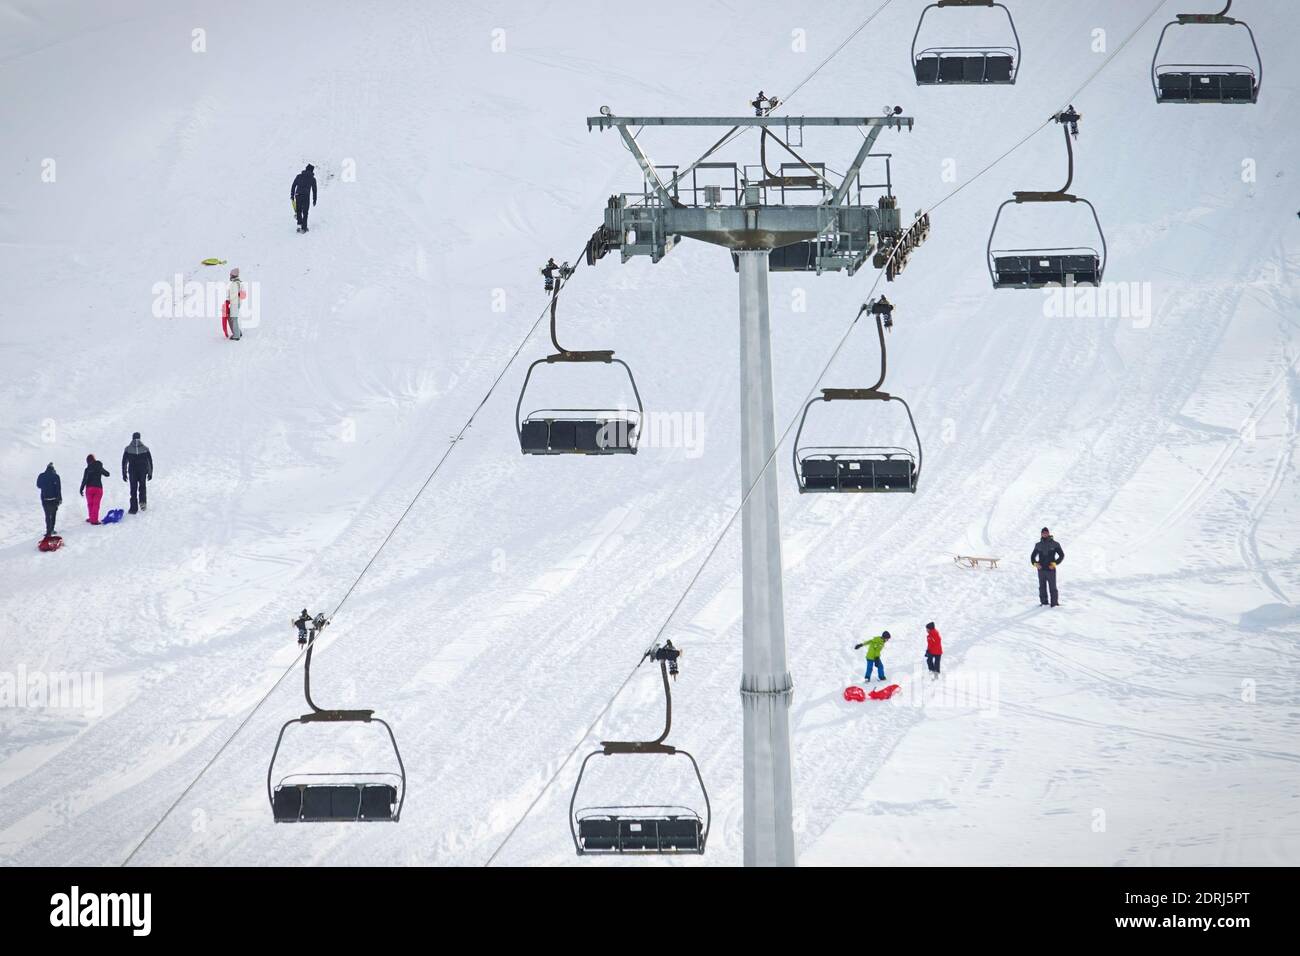 Skipisten wegen Pandemie über Weihnachten geschlossen, nur wenige Touristen mit Kindern spielen im Schnee mit Bob. Sestriere, Italien - Dezember 2020 Stockfoto